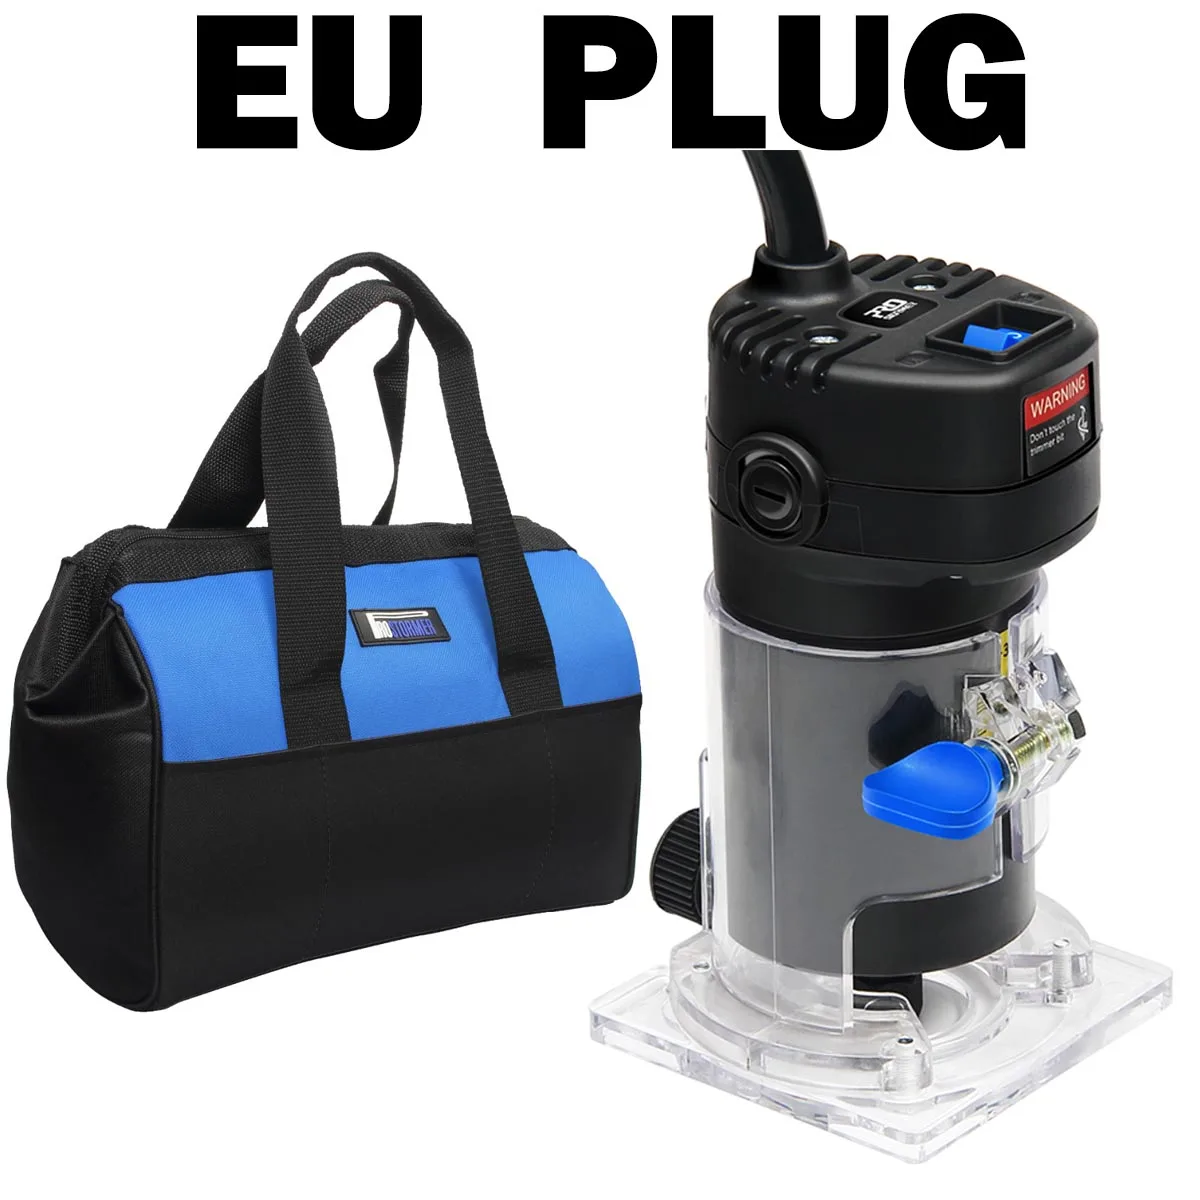 Prostormer 6,35 мм 500 Вт триммер роутера Электрический Ламинат Триммер для кромки мощный Чак деревообрабатывающий триммер с сумкой электроинструменты - Цвет: Bag EU PLUG